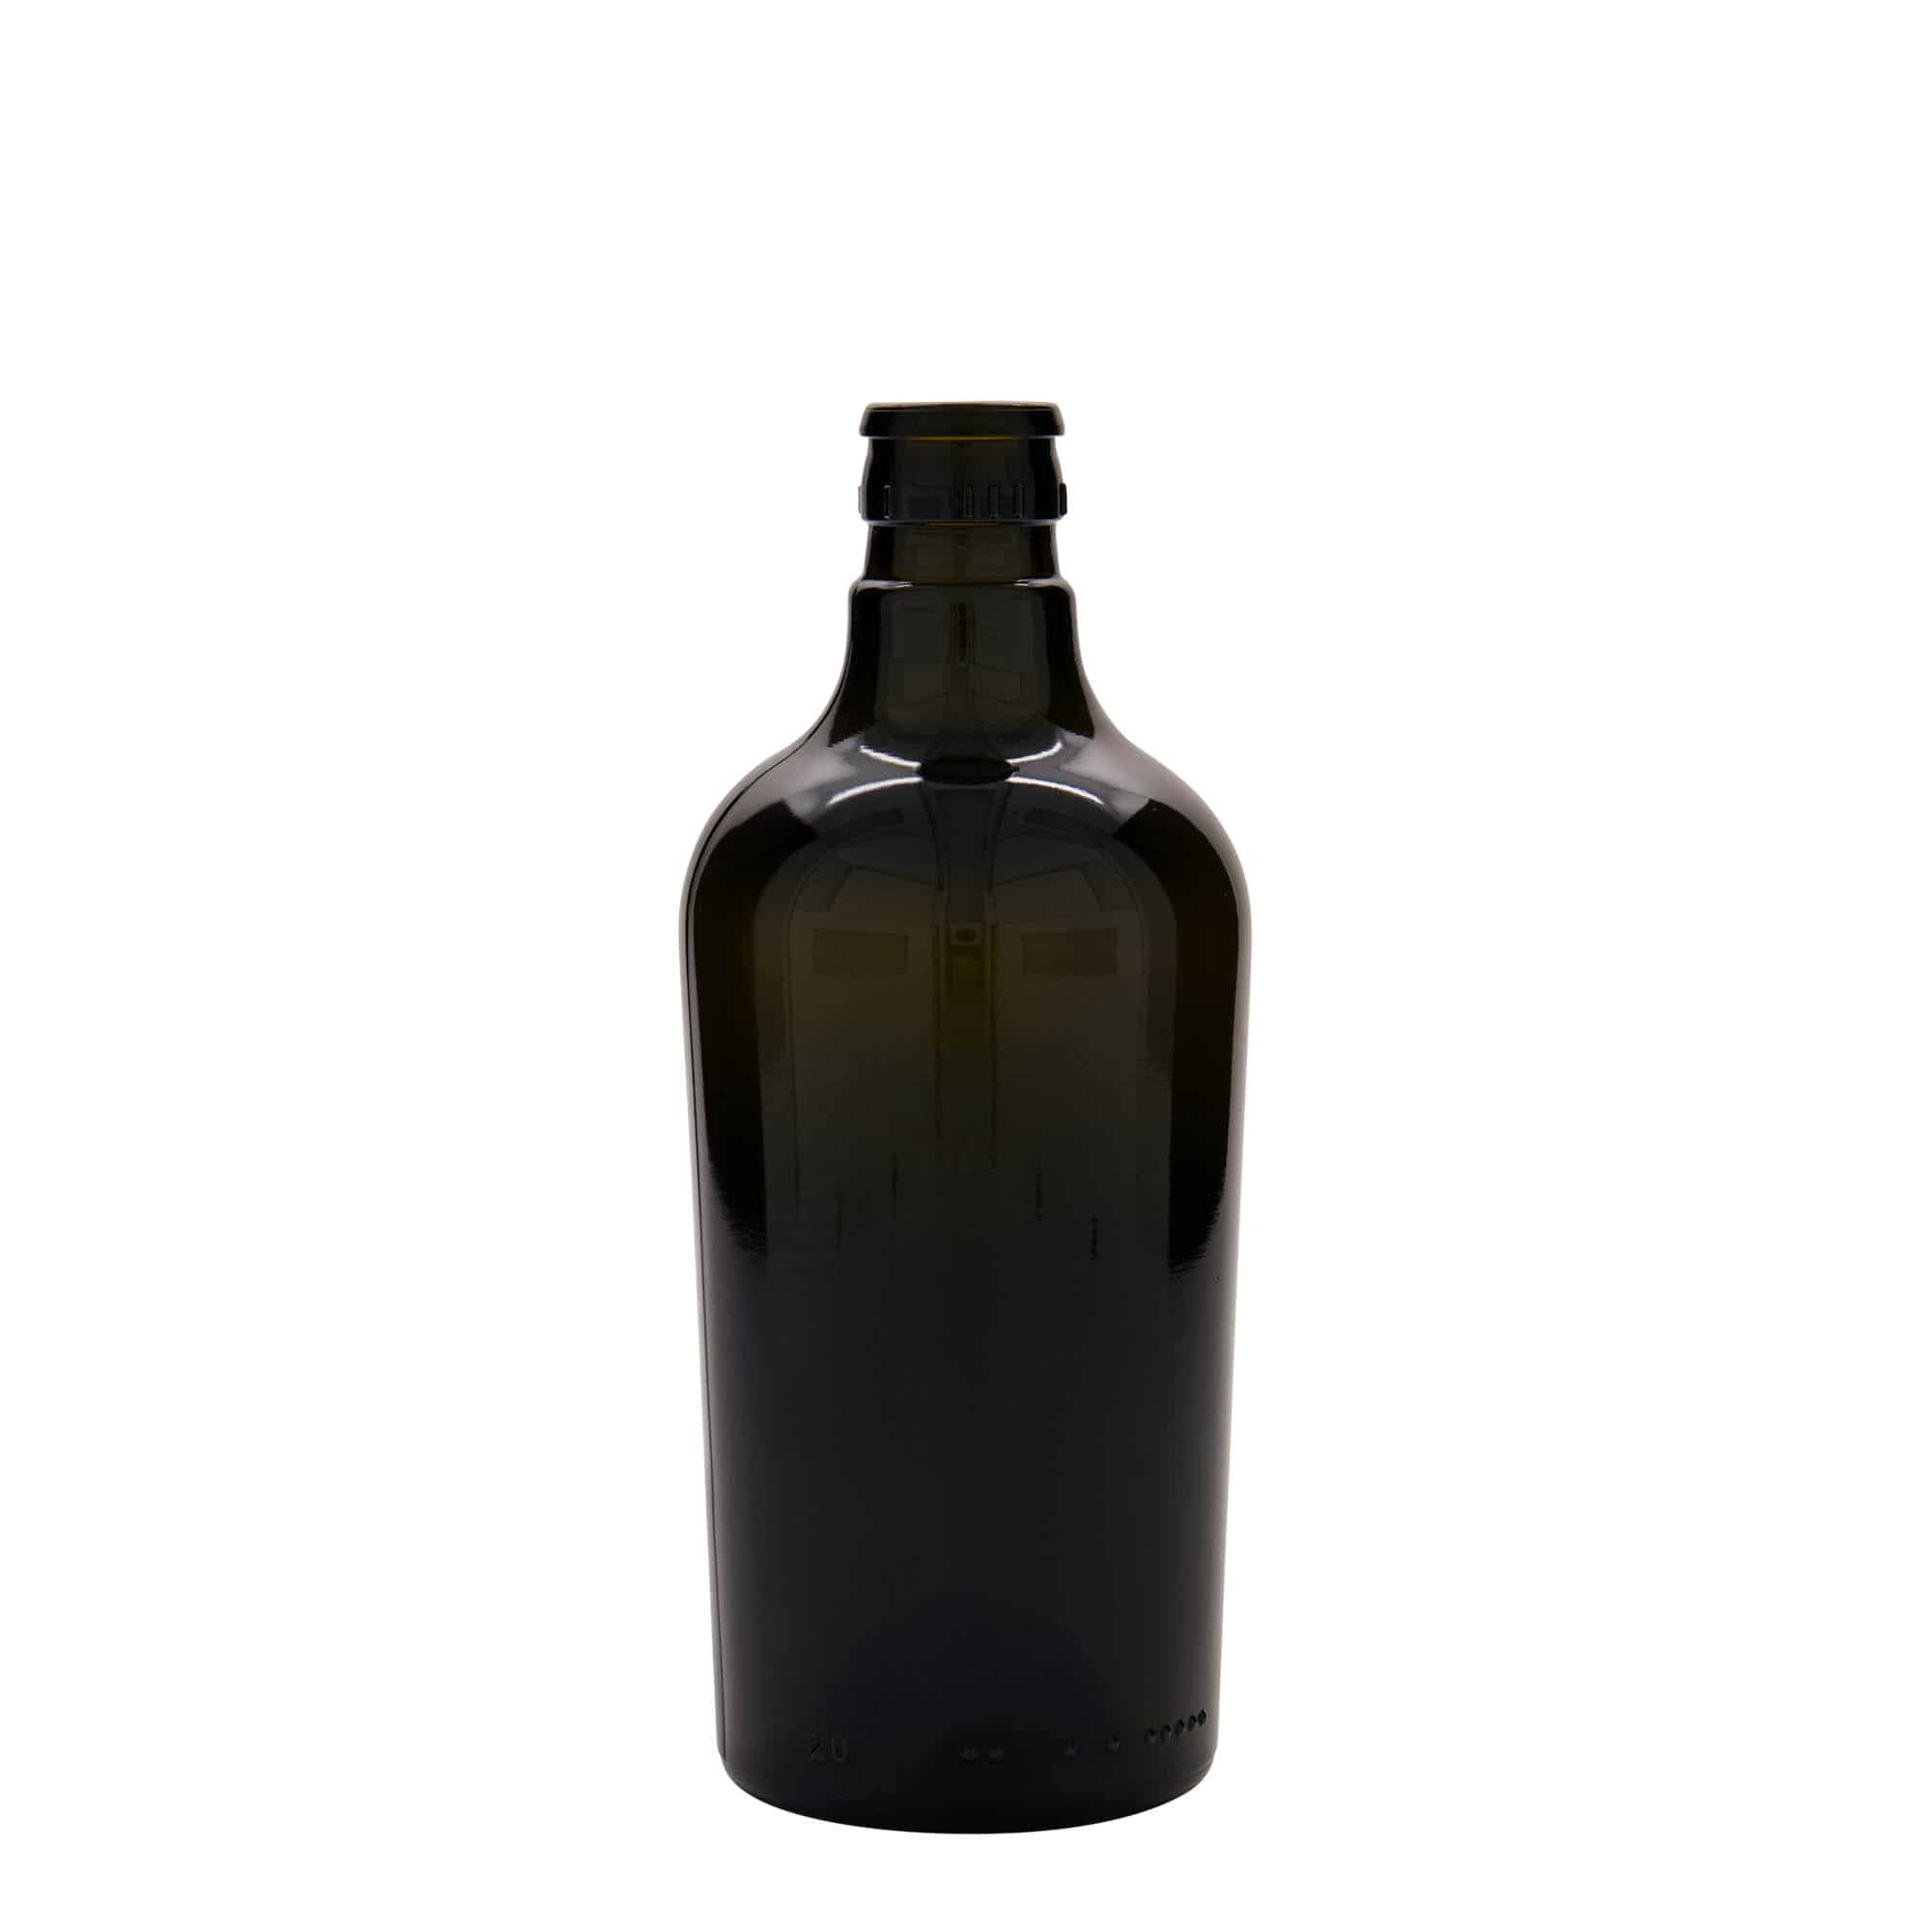 Azijn-/oliefles 'Oleum', 500 ml, glas, antiekgroen, monding: DOP